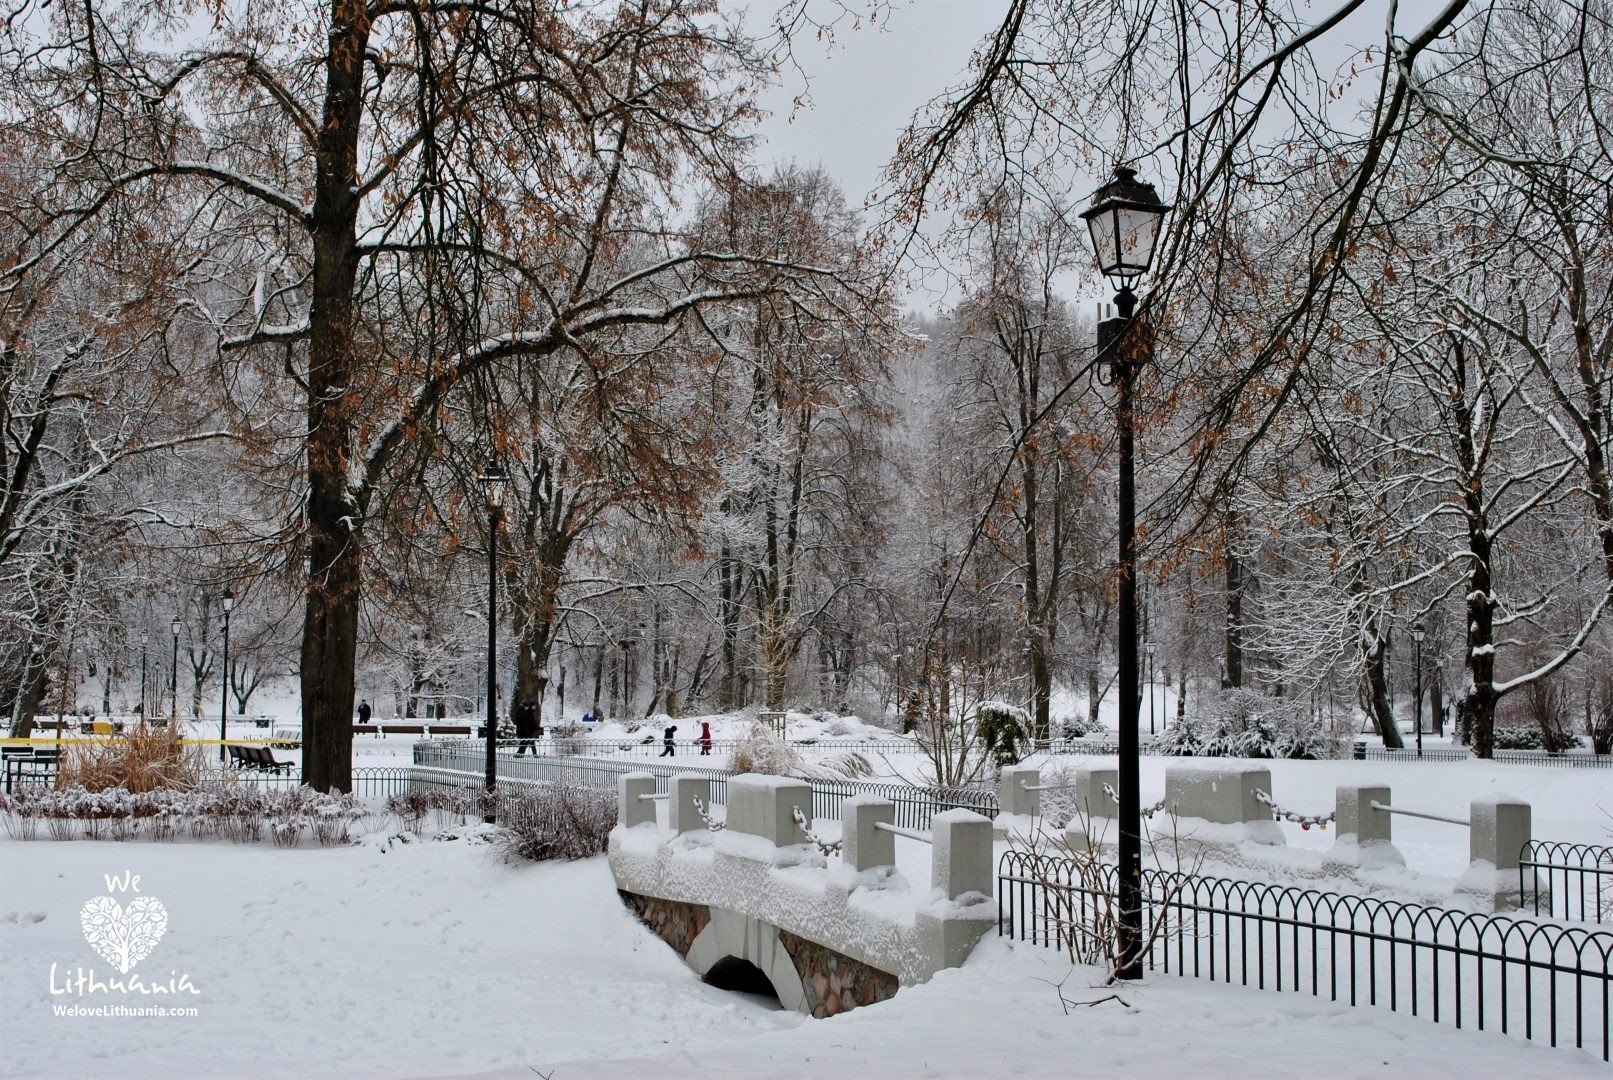 Vilnius, Bernandinų sodas gražus bet kuriuo metu laiku. Žiemą smagu pasivaikščioti baltoje tyloje.